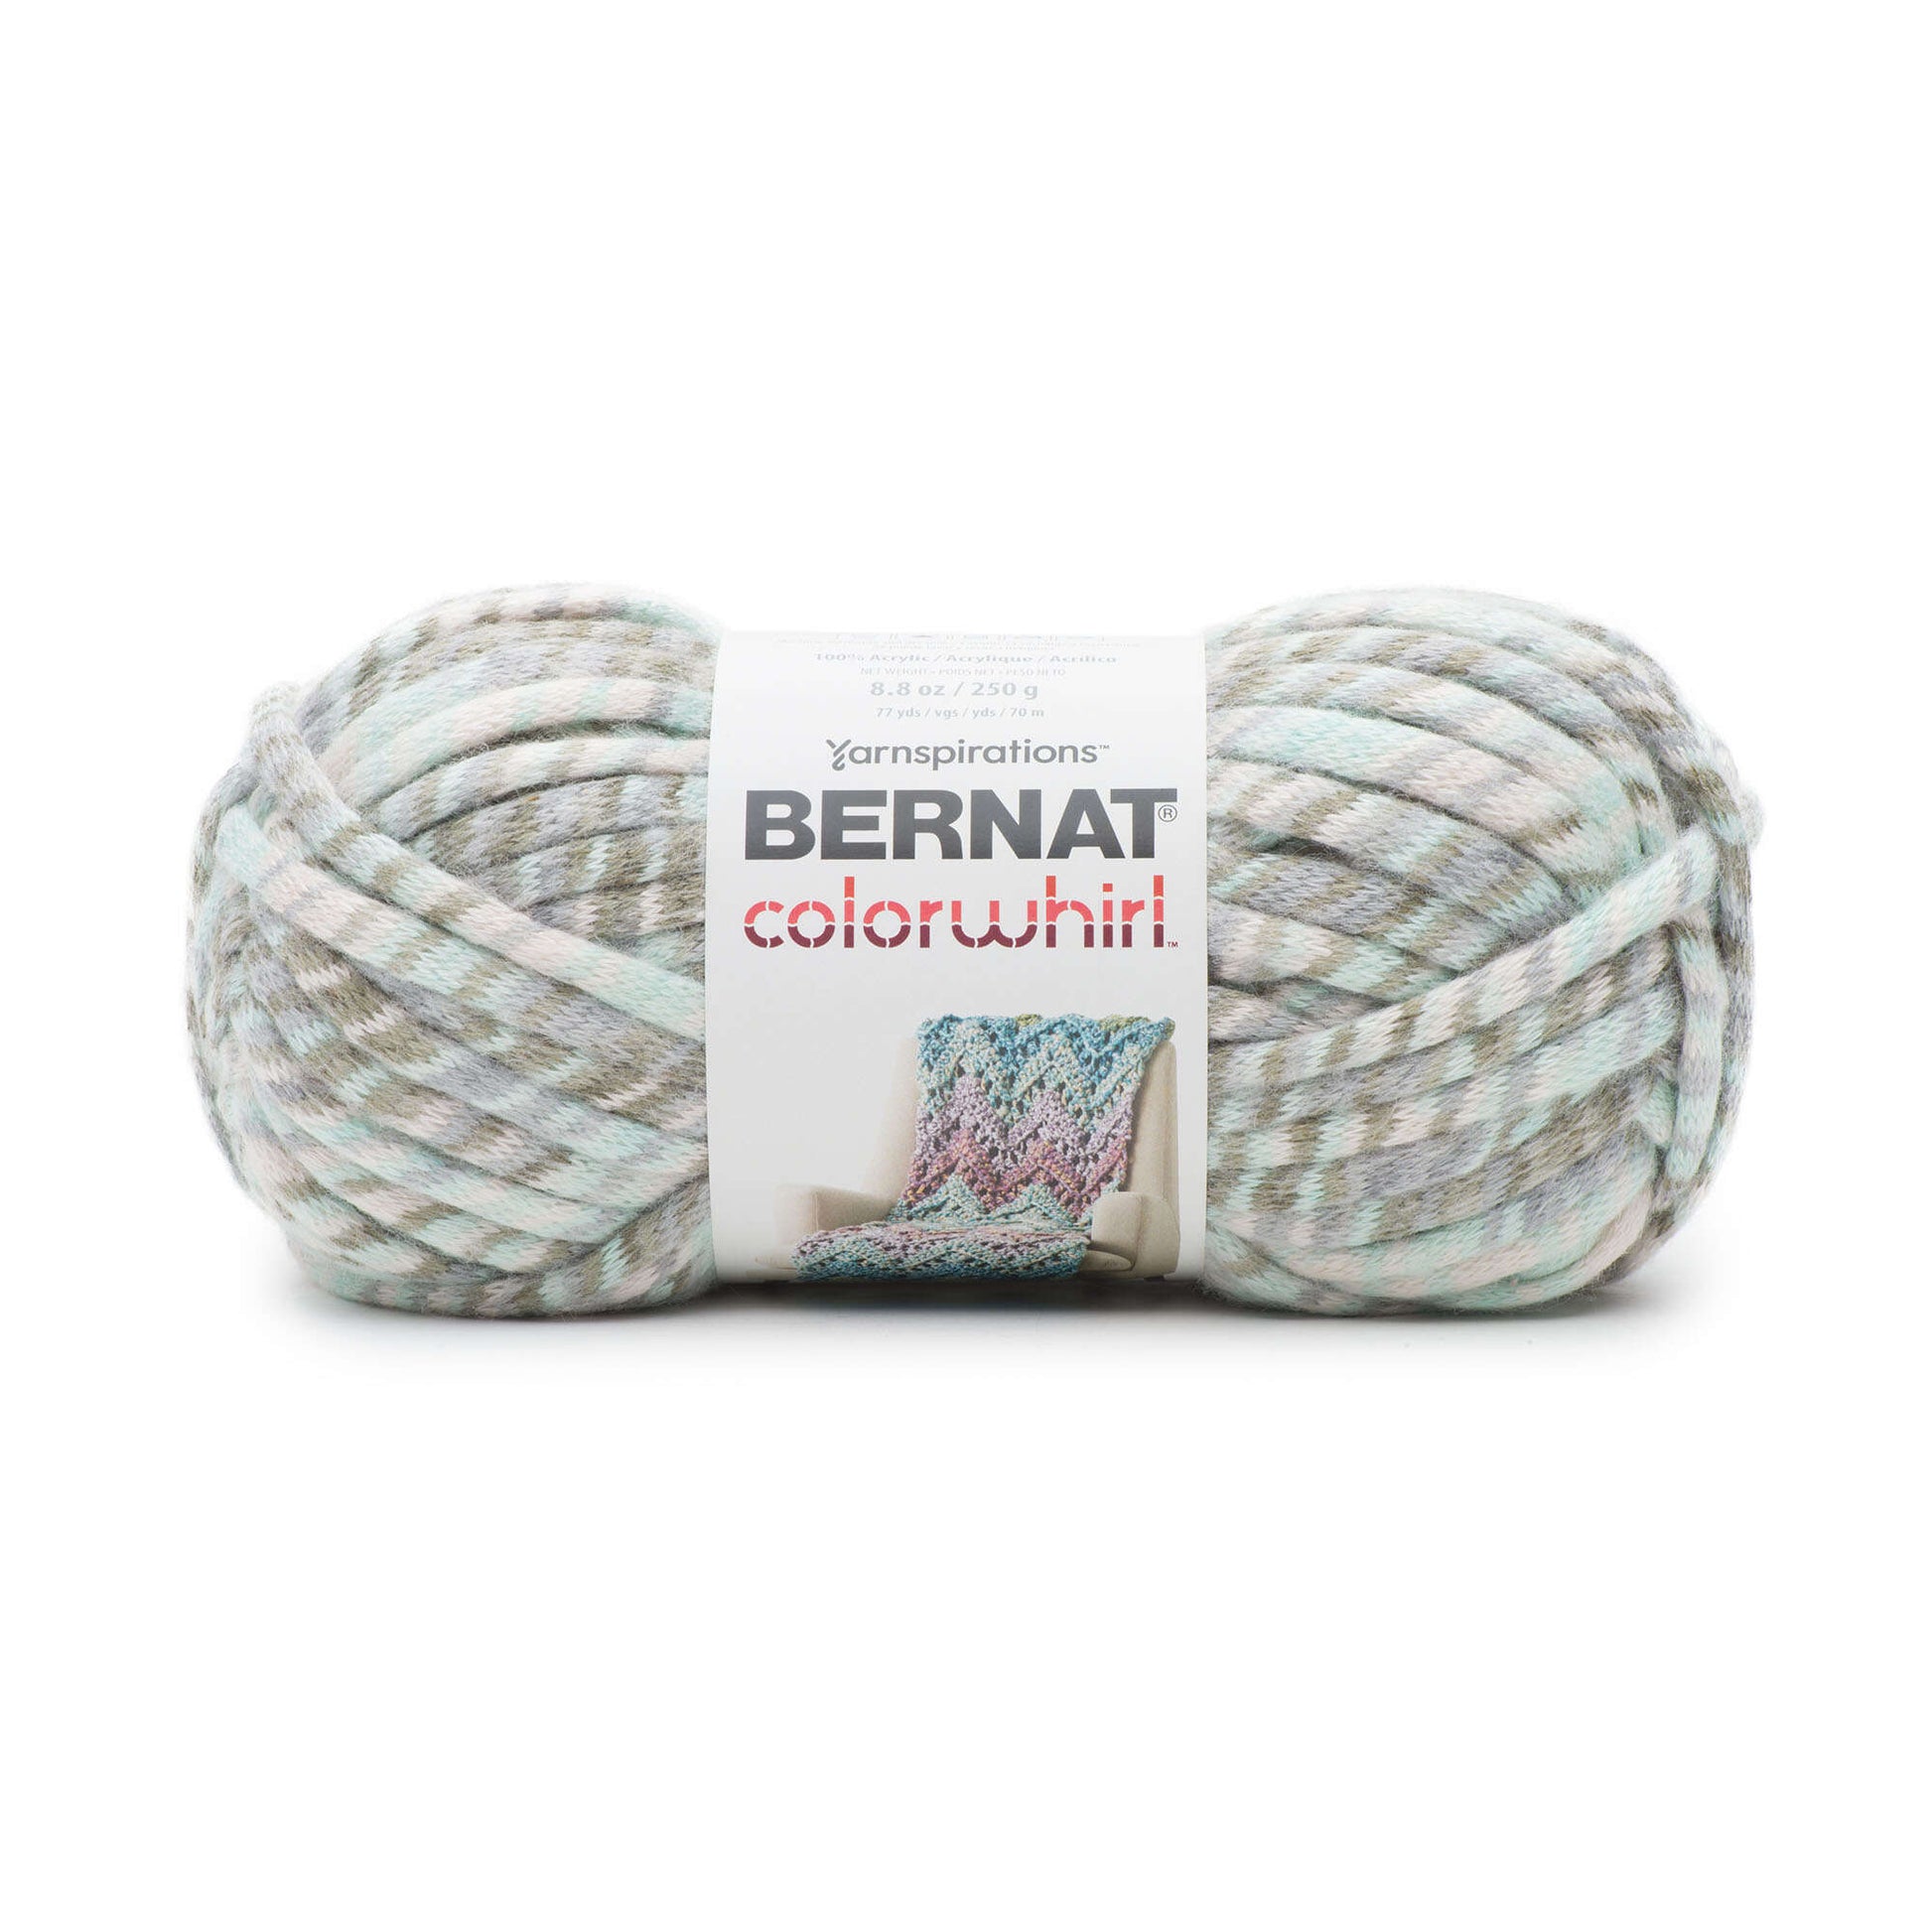 Bernat Colorwhirl Yarn - Discontinued Shades